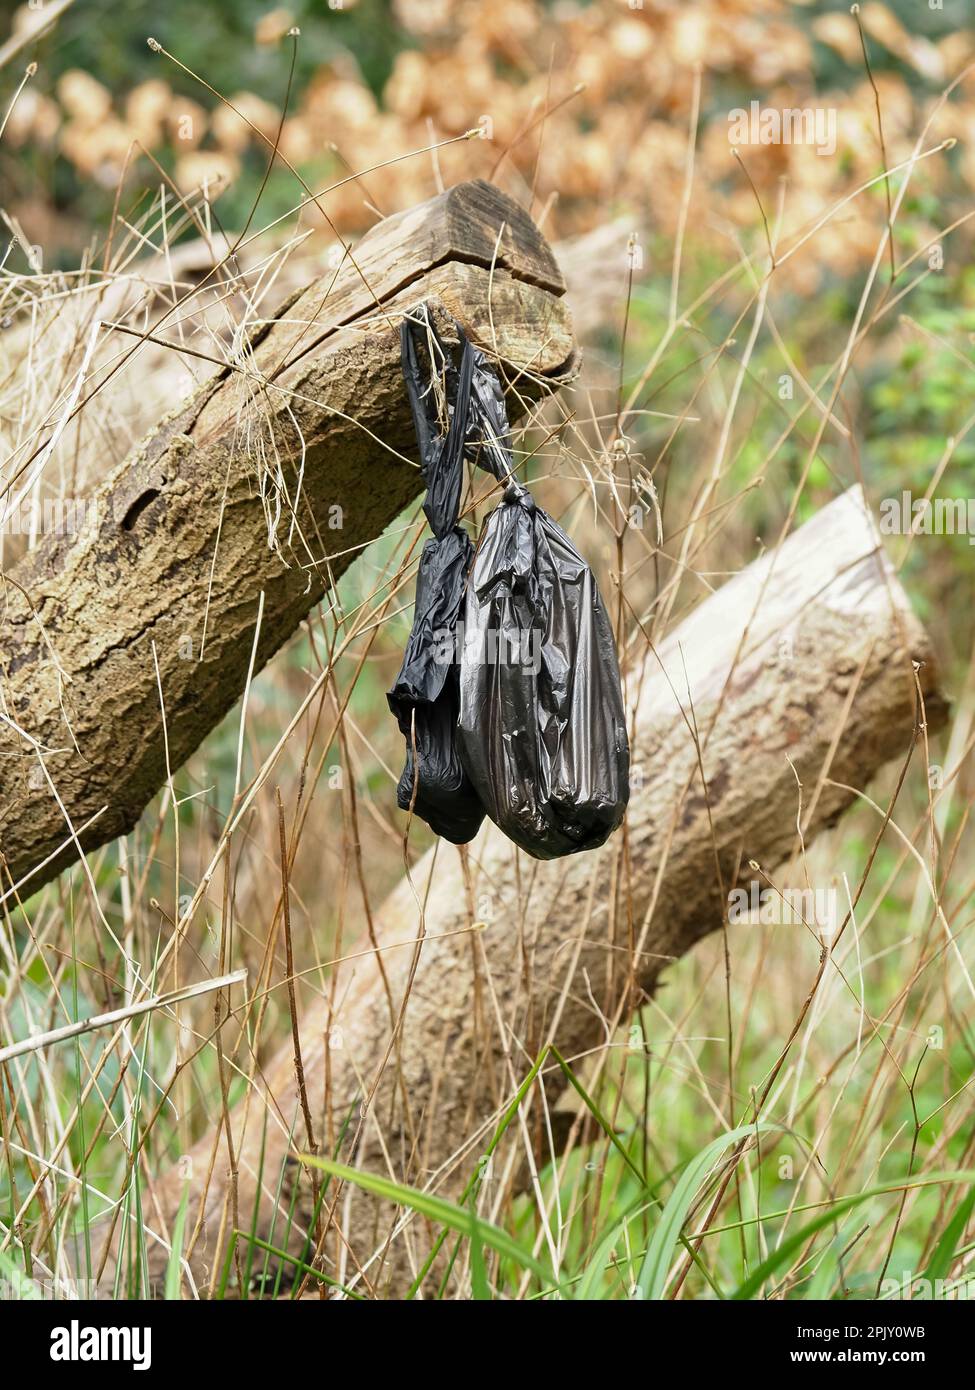 Eine unordentliche Szene mit weggeworfenen Plastikhunden-Kacksäcken und Fäkalien in einer Natur- und Wildtierumgebung, ohne dass Menschen anwesend sind. Stockfoto